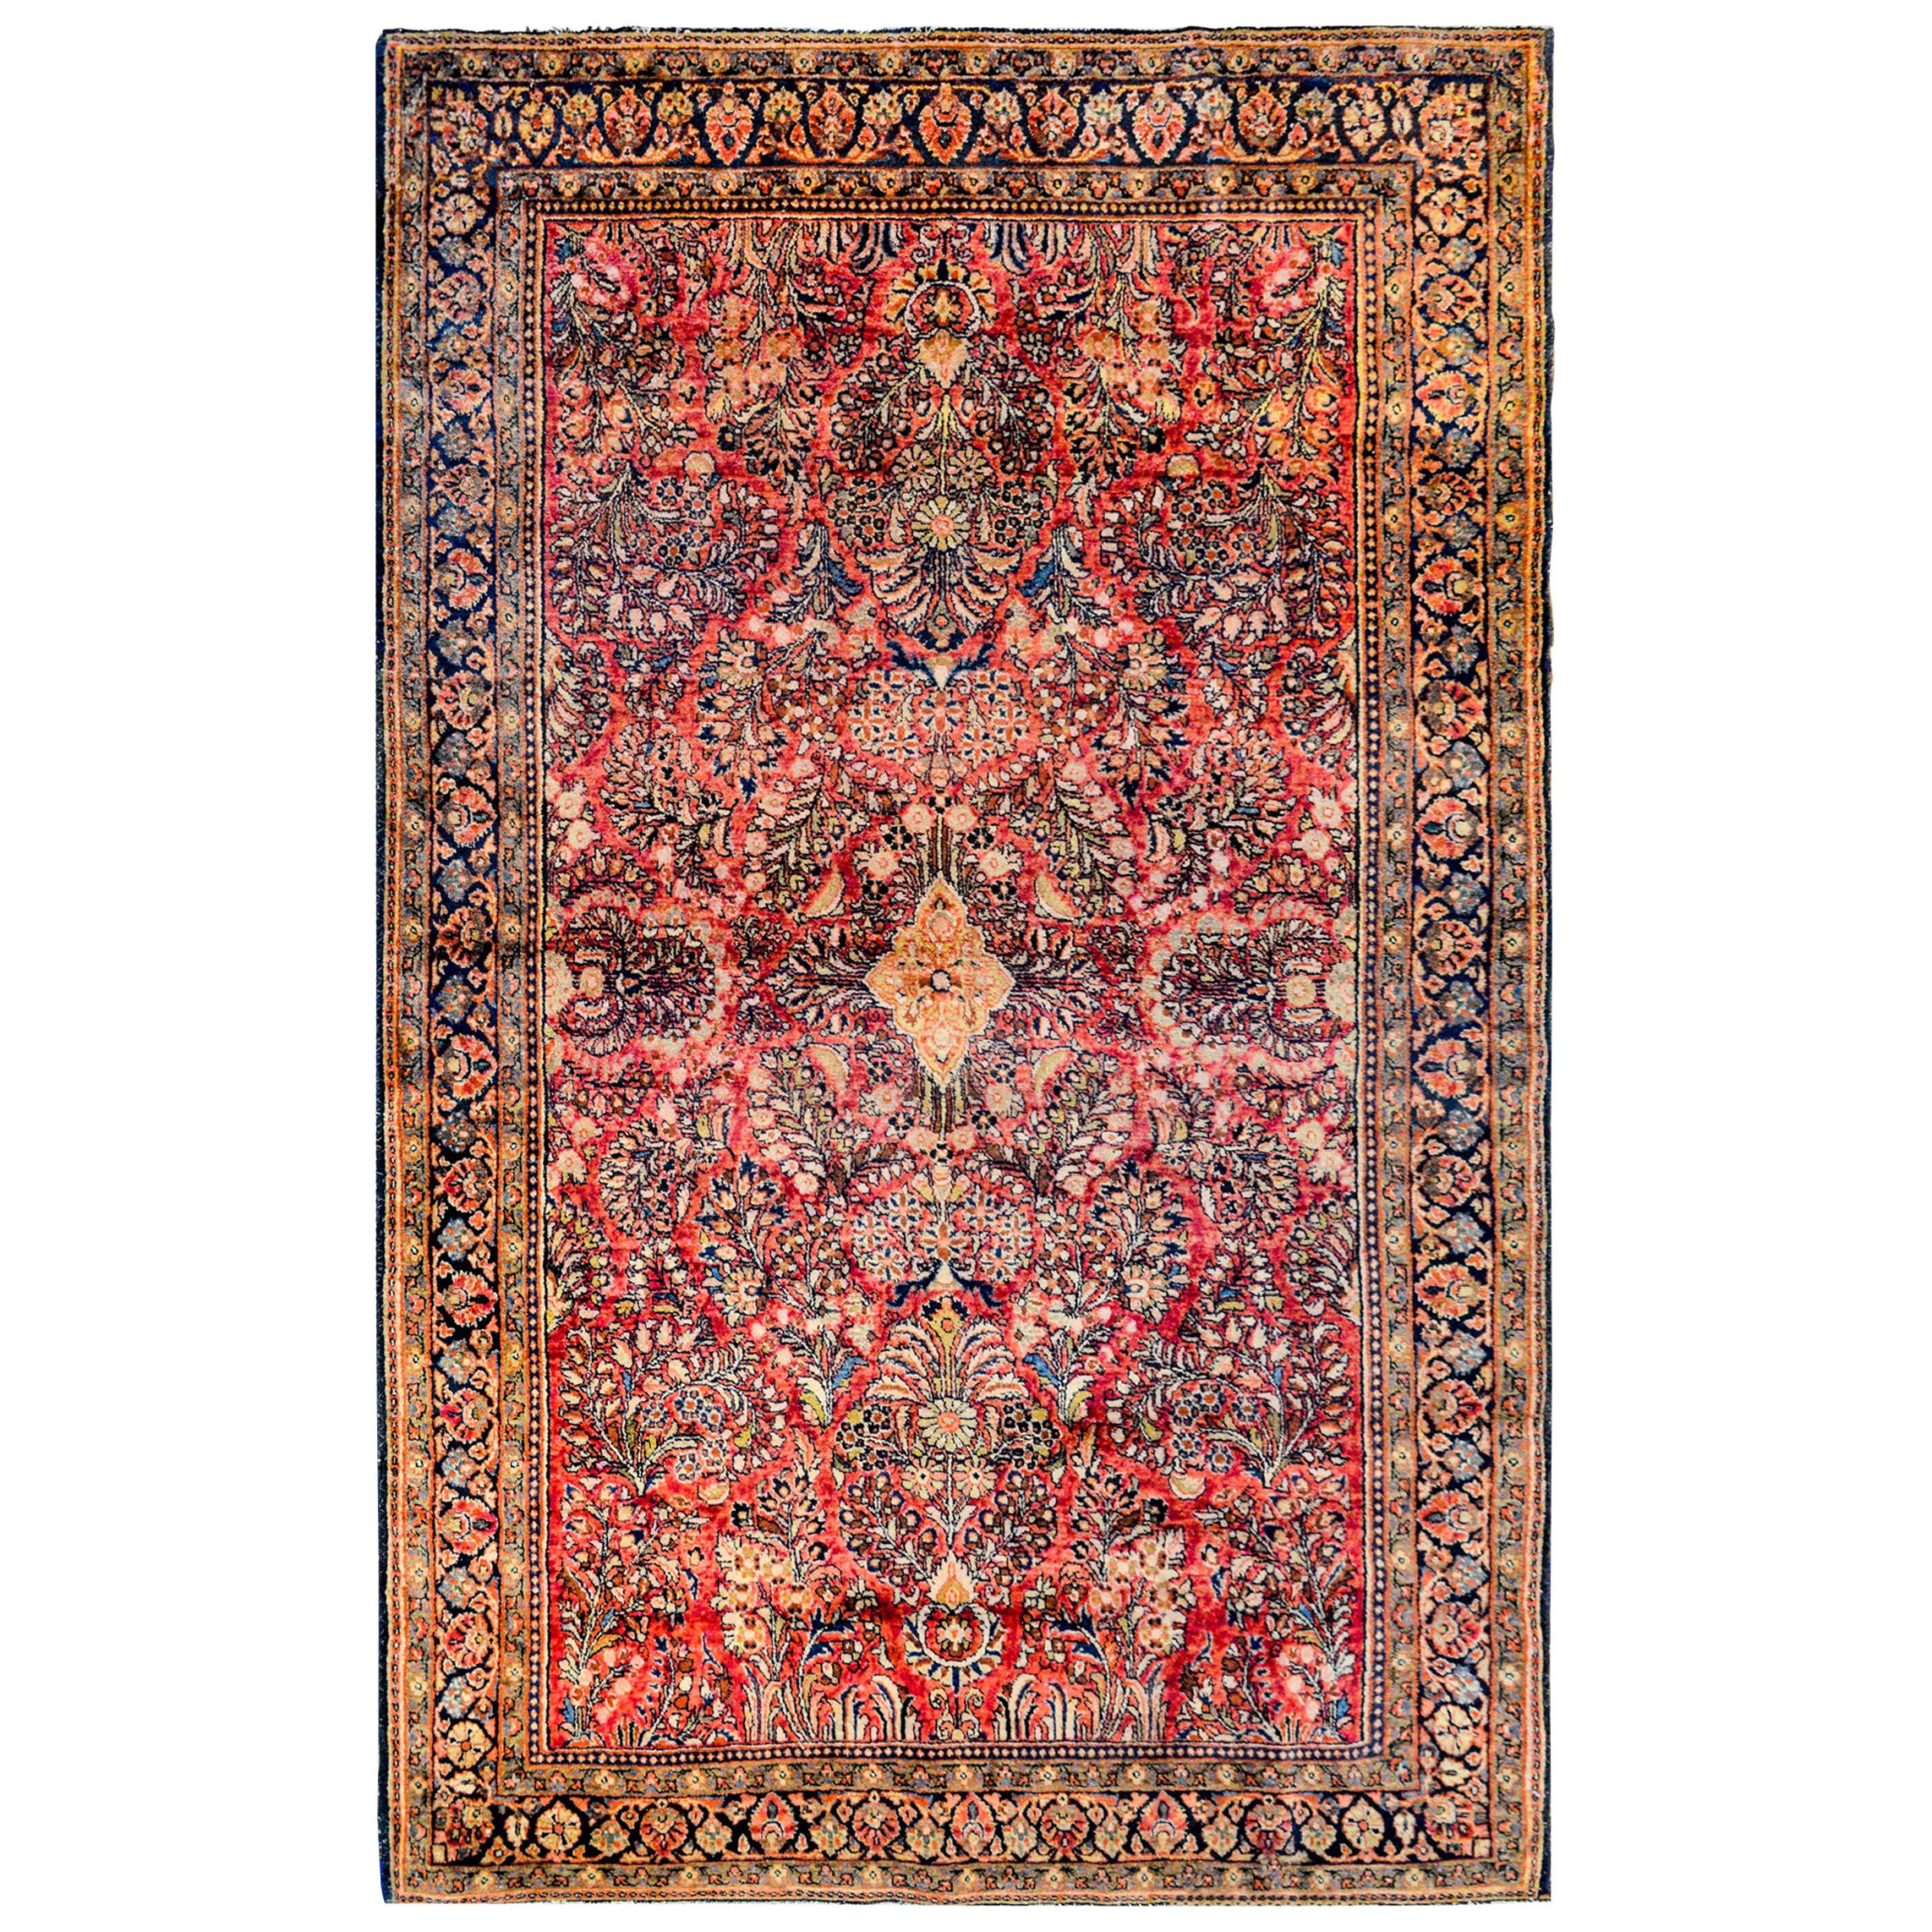 Wunderschöner Sarouk-Teppich aus dem frühen 20. Jahrhundert